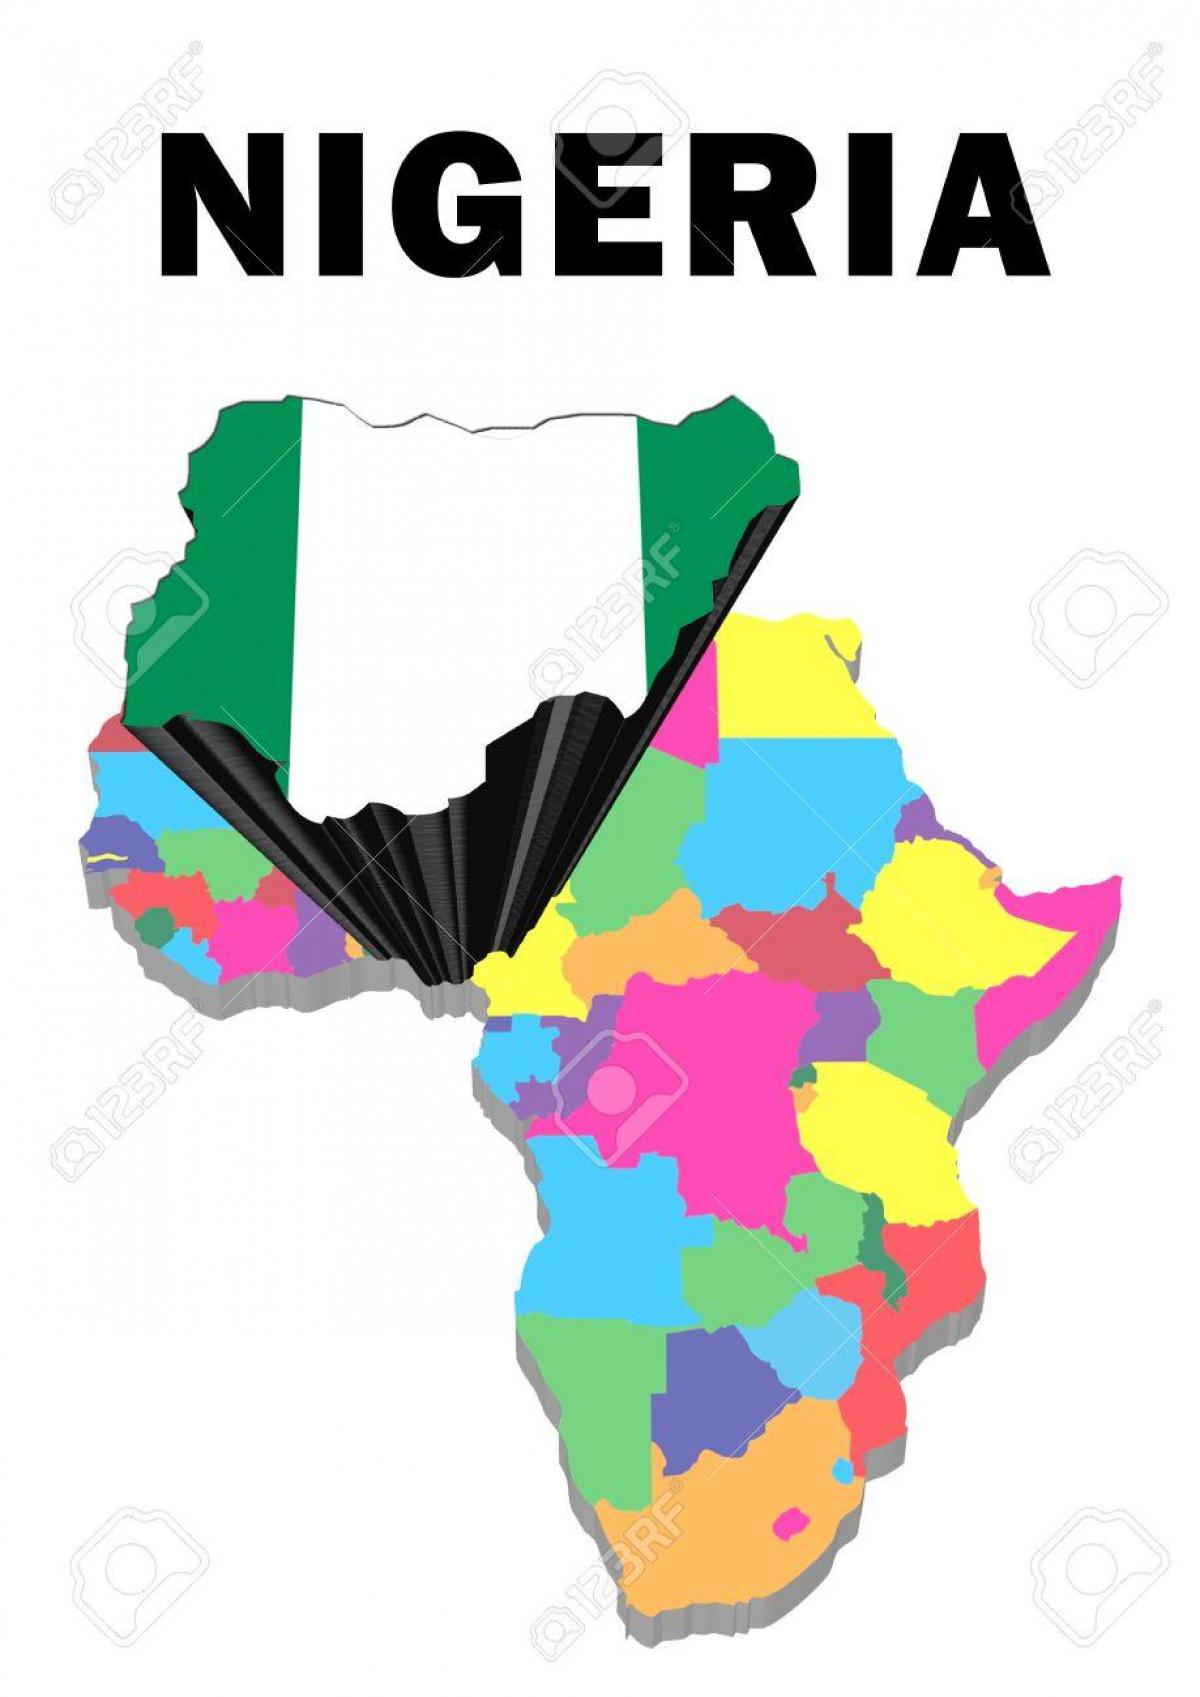 แผนที่ของแอฟริกากับไนจีเรียเน้น